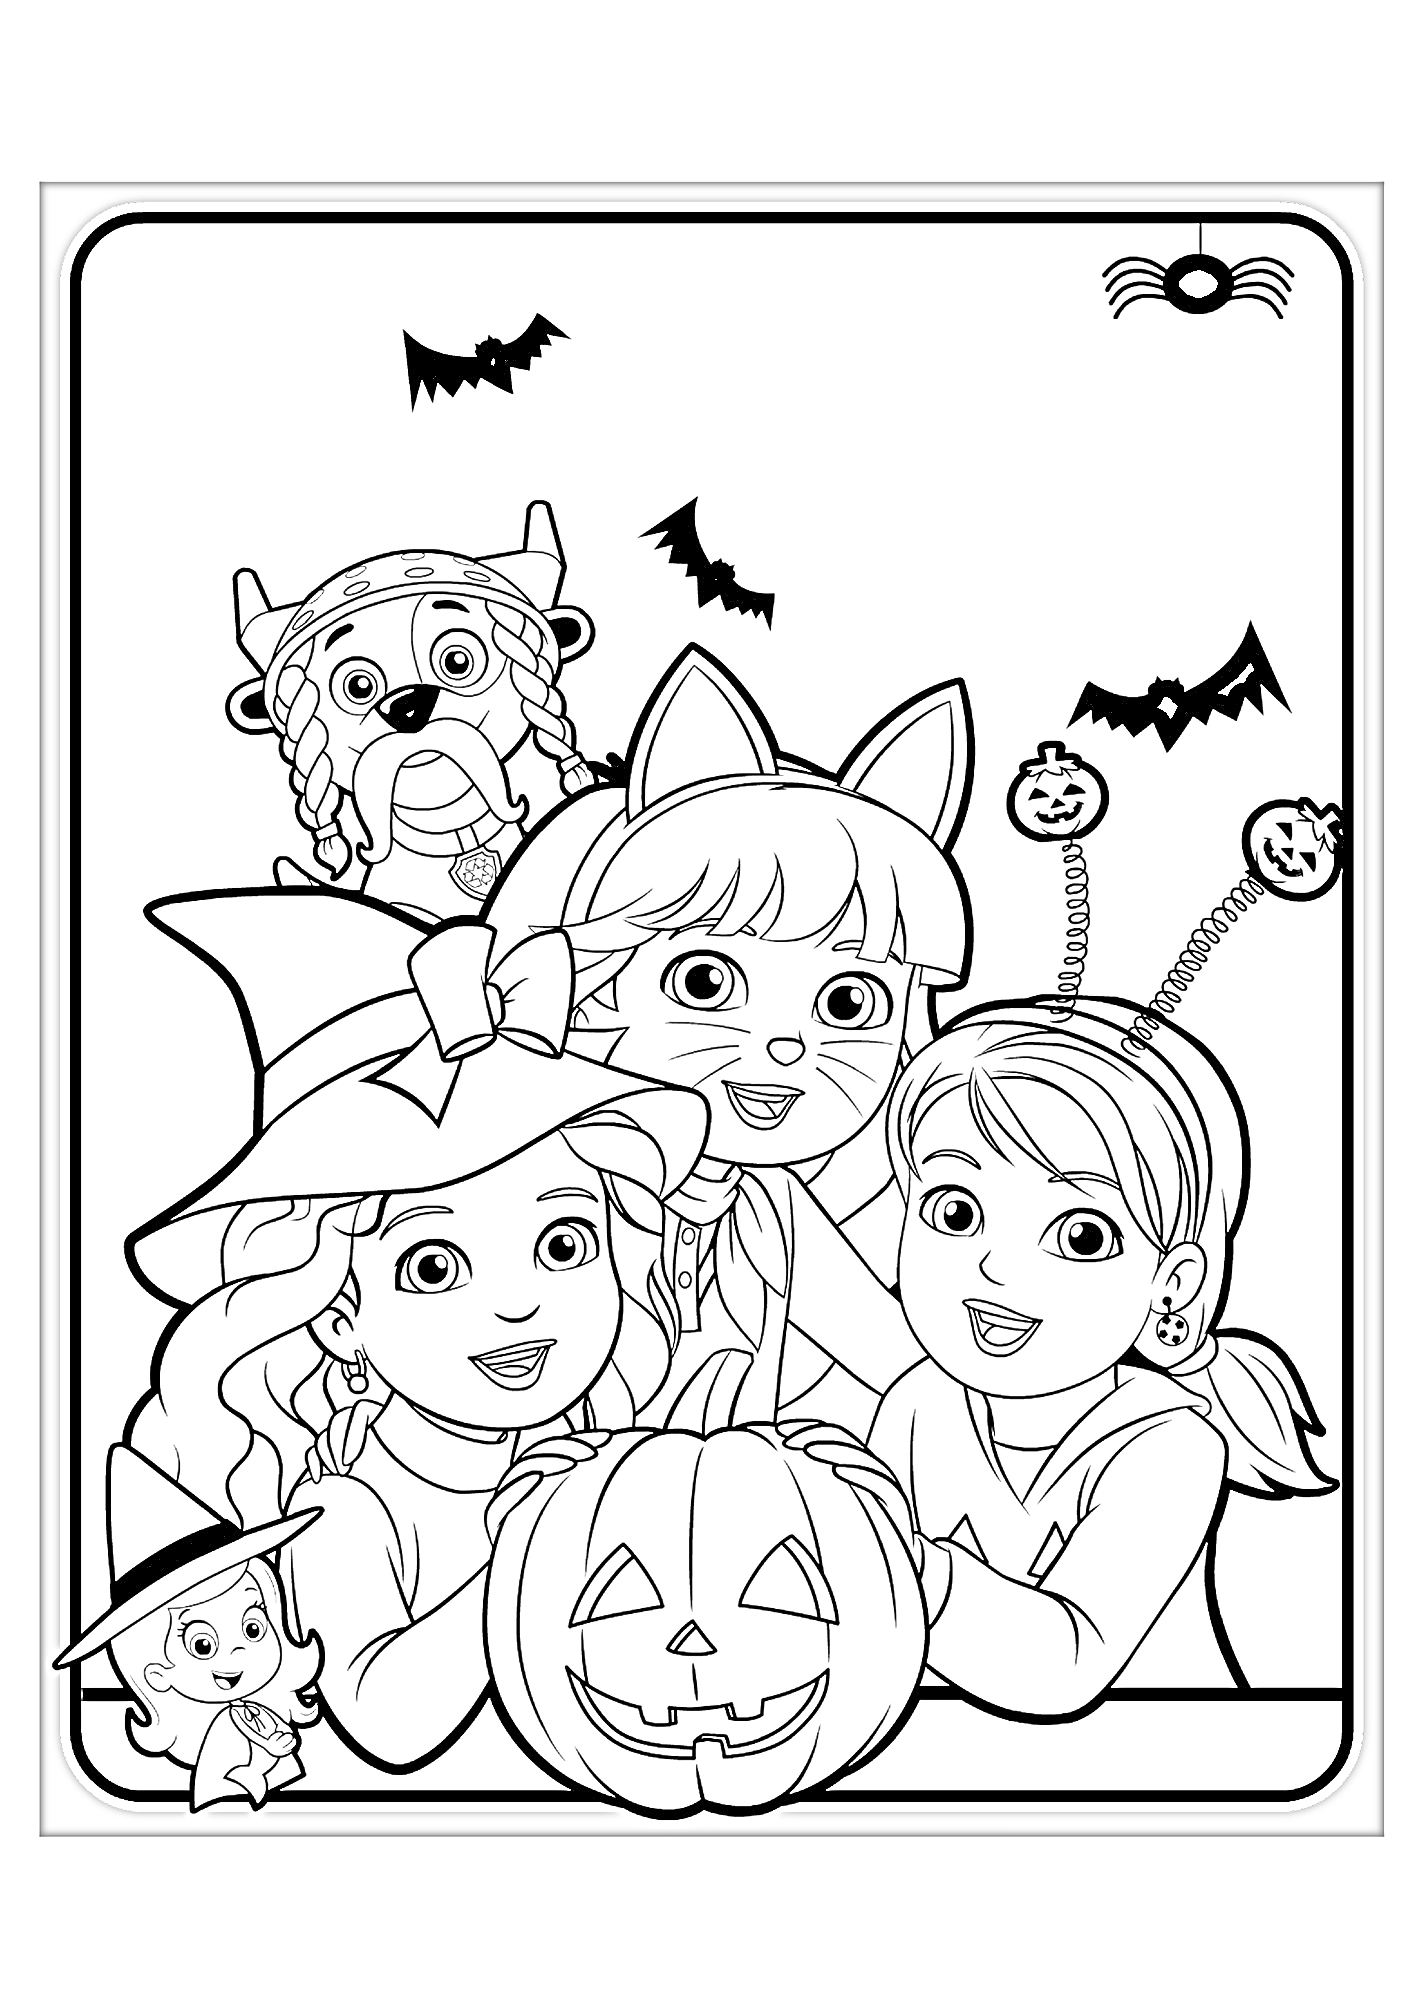 Даша и друзья на Хэллоуин: костюмы ведьмы, кошки, маленького вампира и тыква фонарик, летучие мыши и паук на паутине